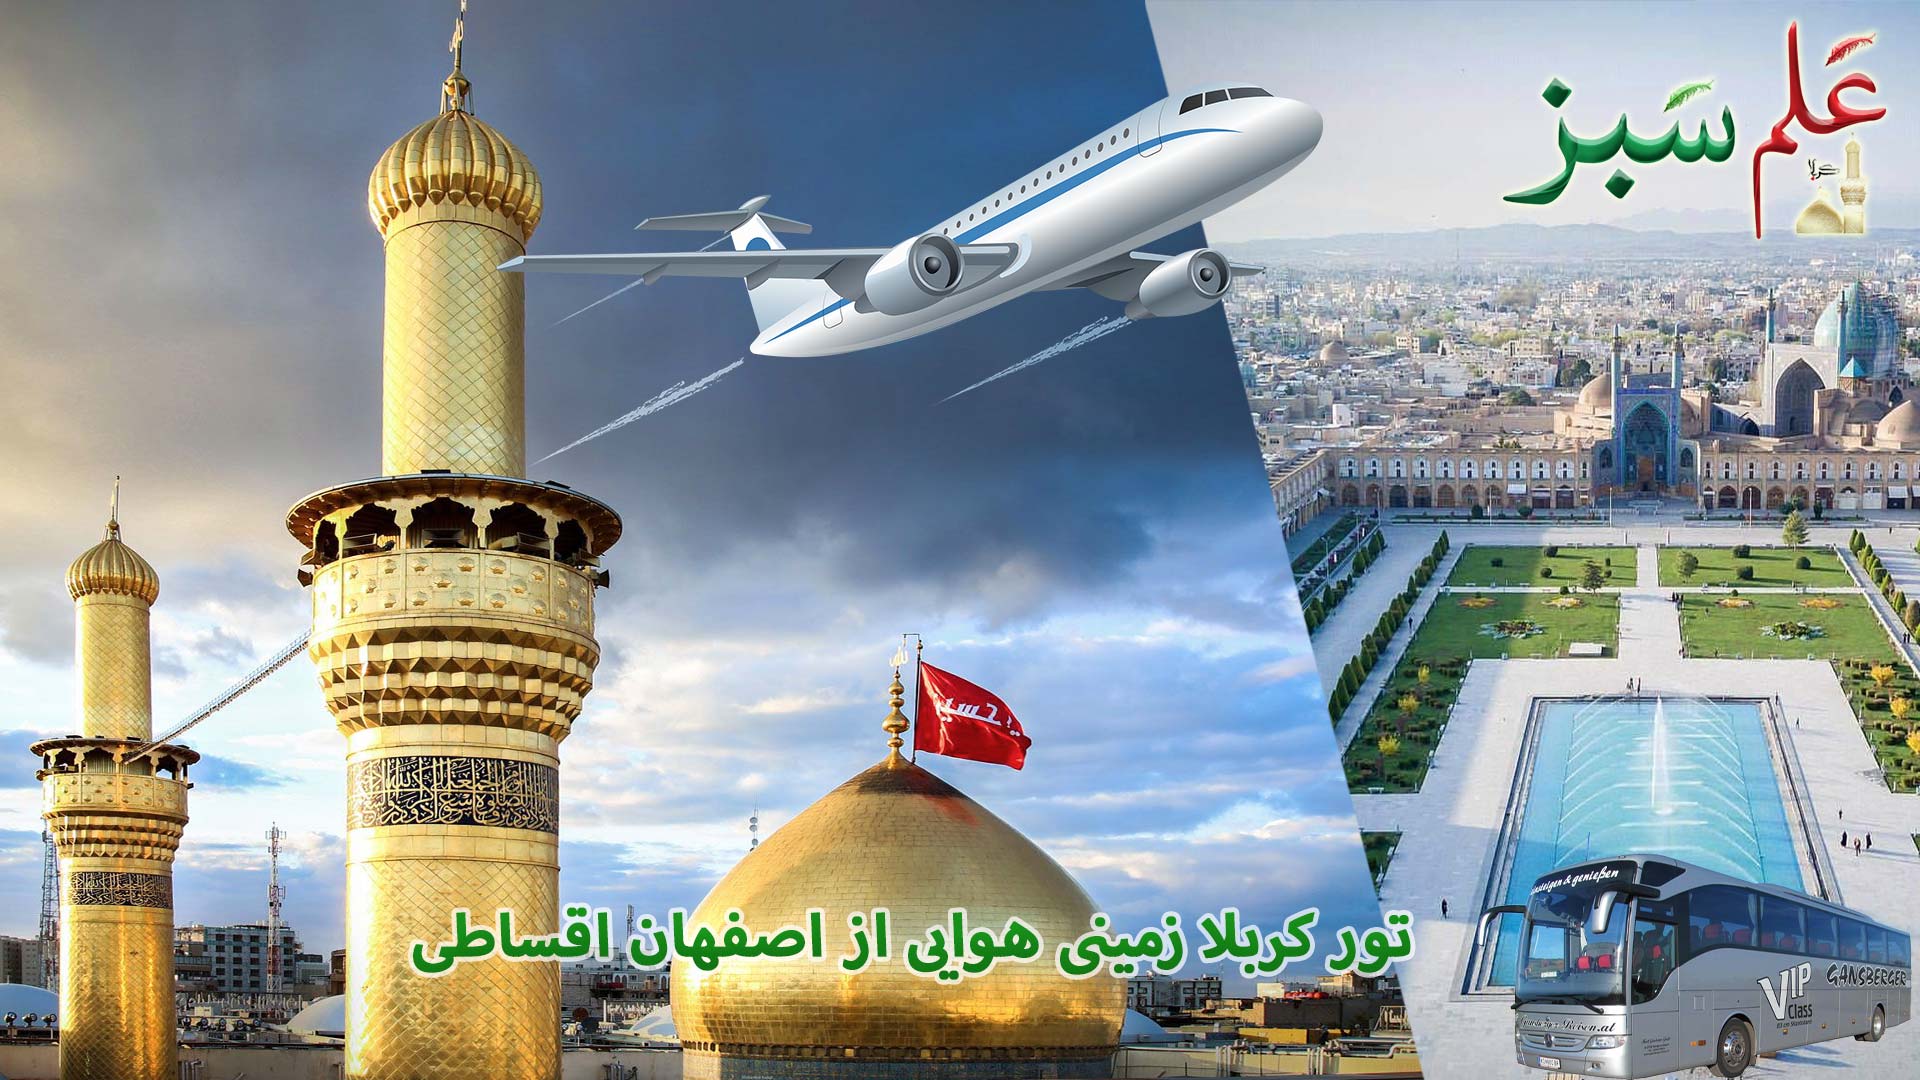 تور کربلا زمینی هوایی از اصفهان اقساطی